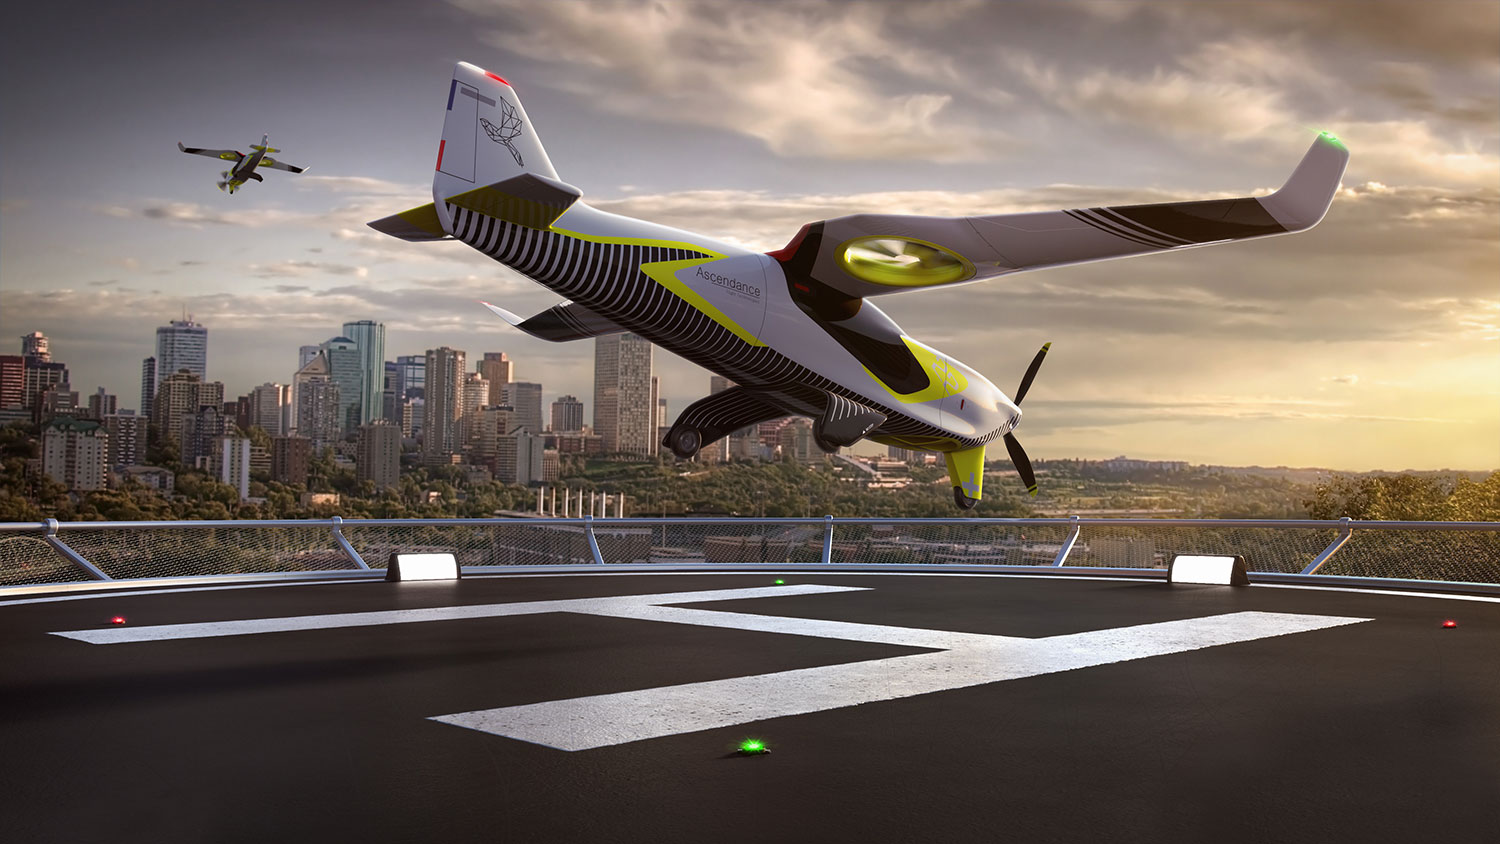 Ascendance unveils a long-range, low emissions hybrid propulsion VTOL aircraft.